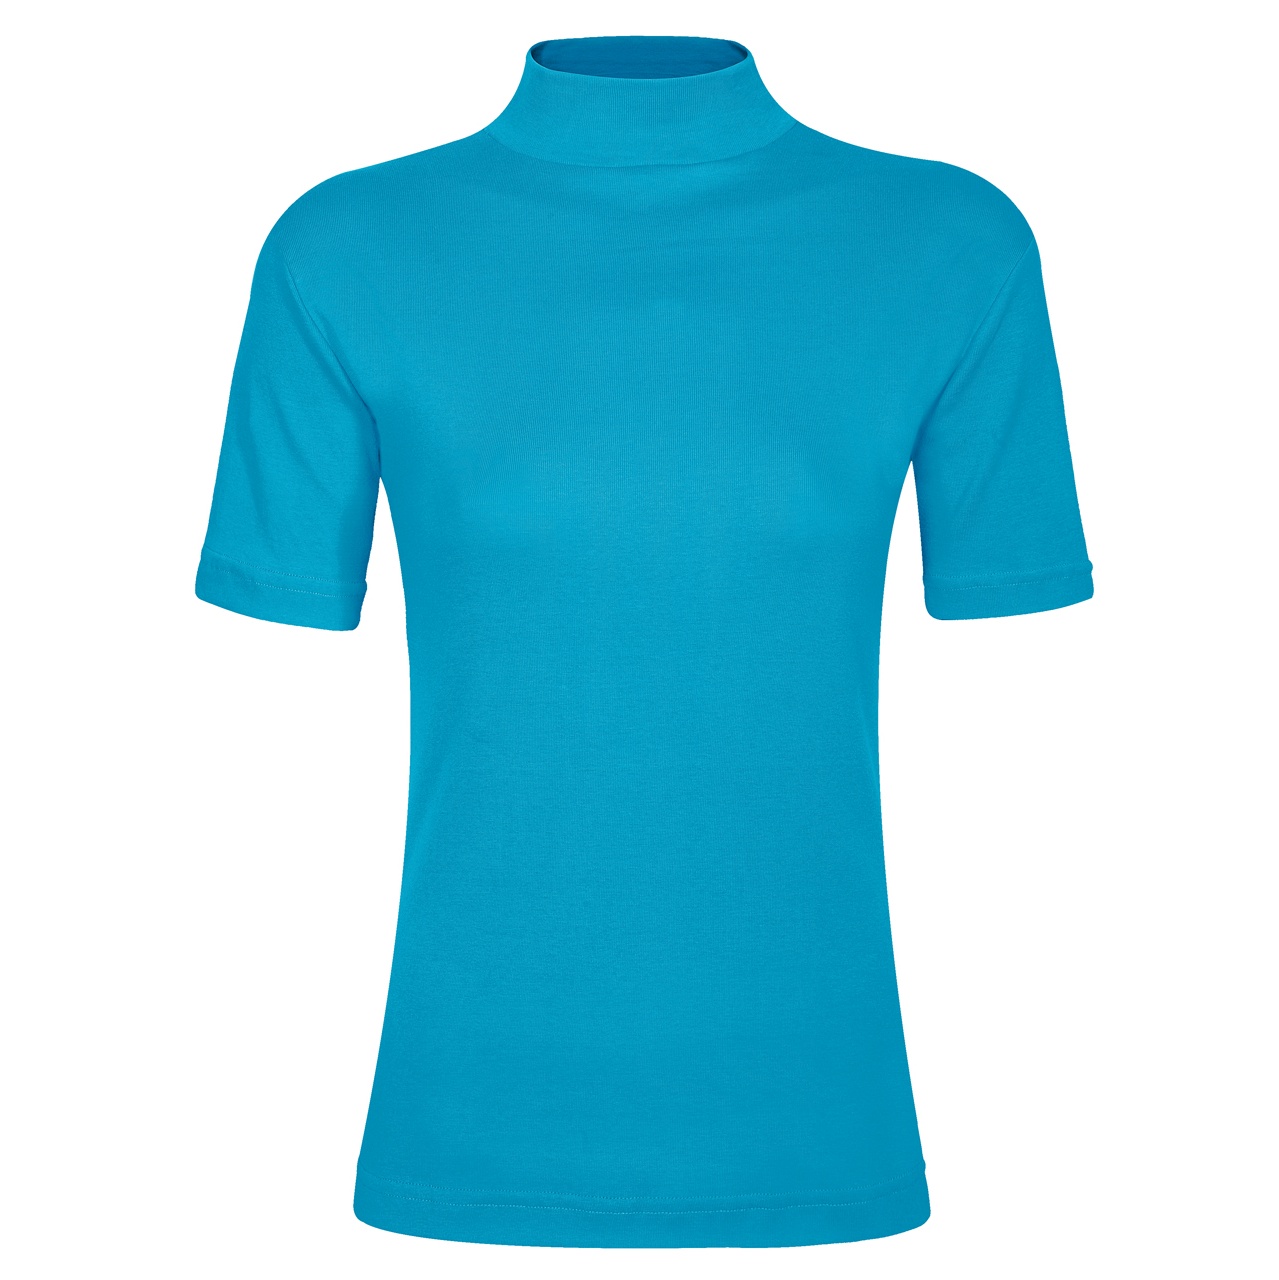 تی شرت زنانه ساروک مدل TZY5cm13 رنگ آبی فیروزه ای